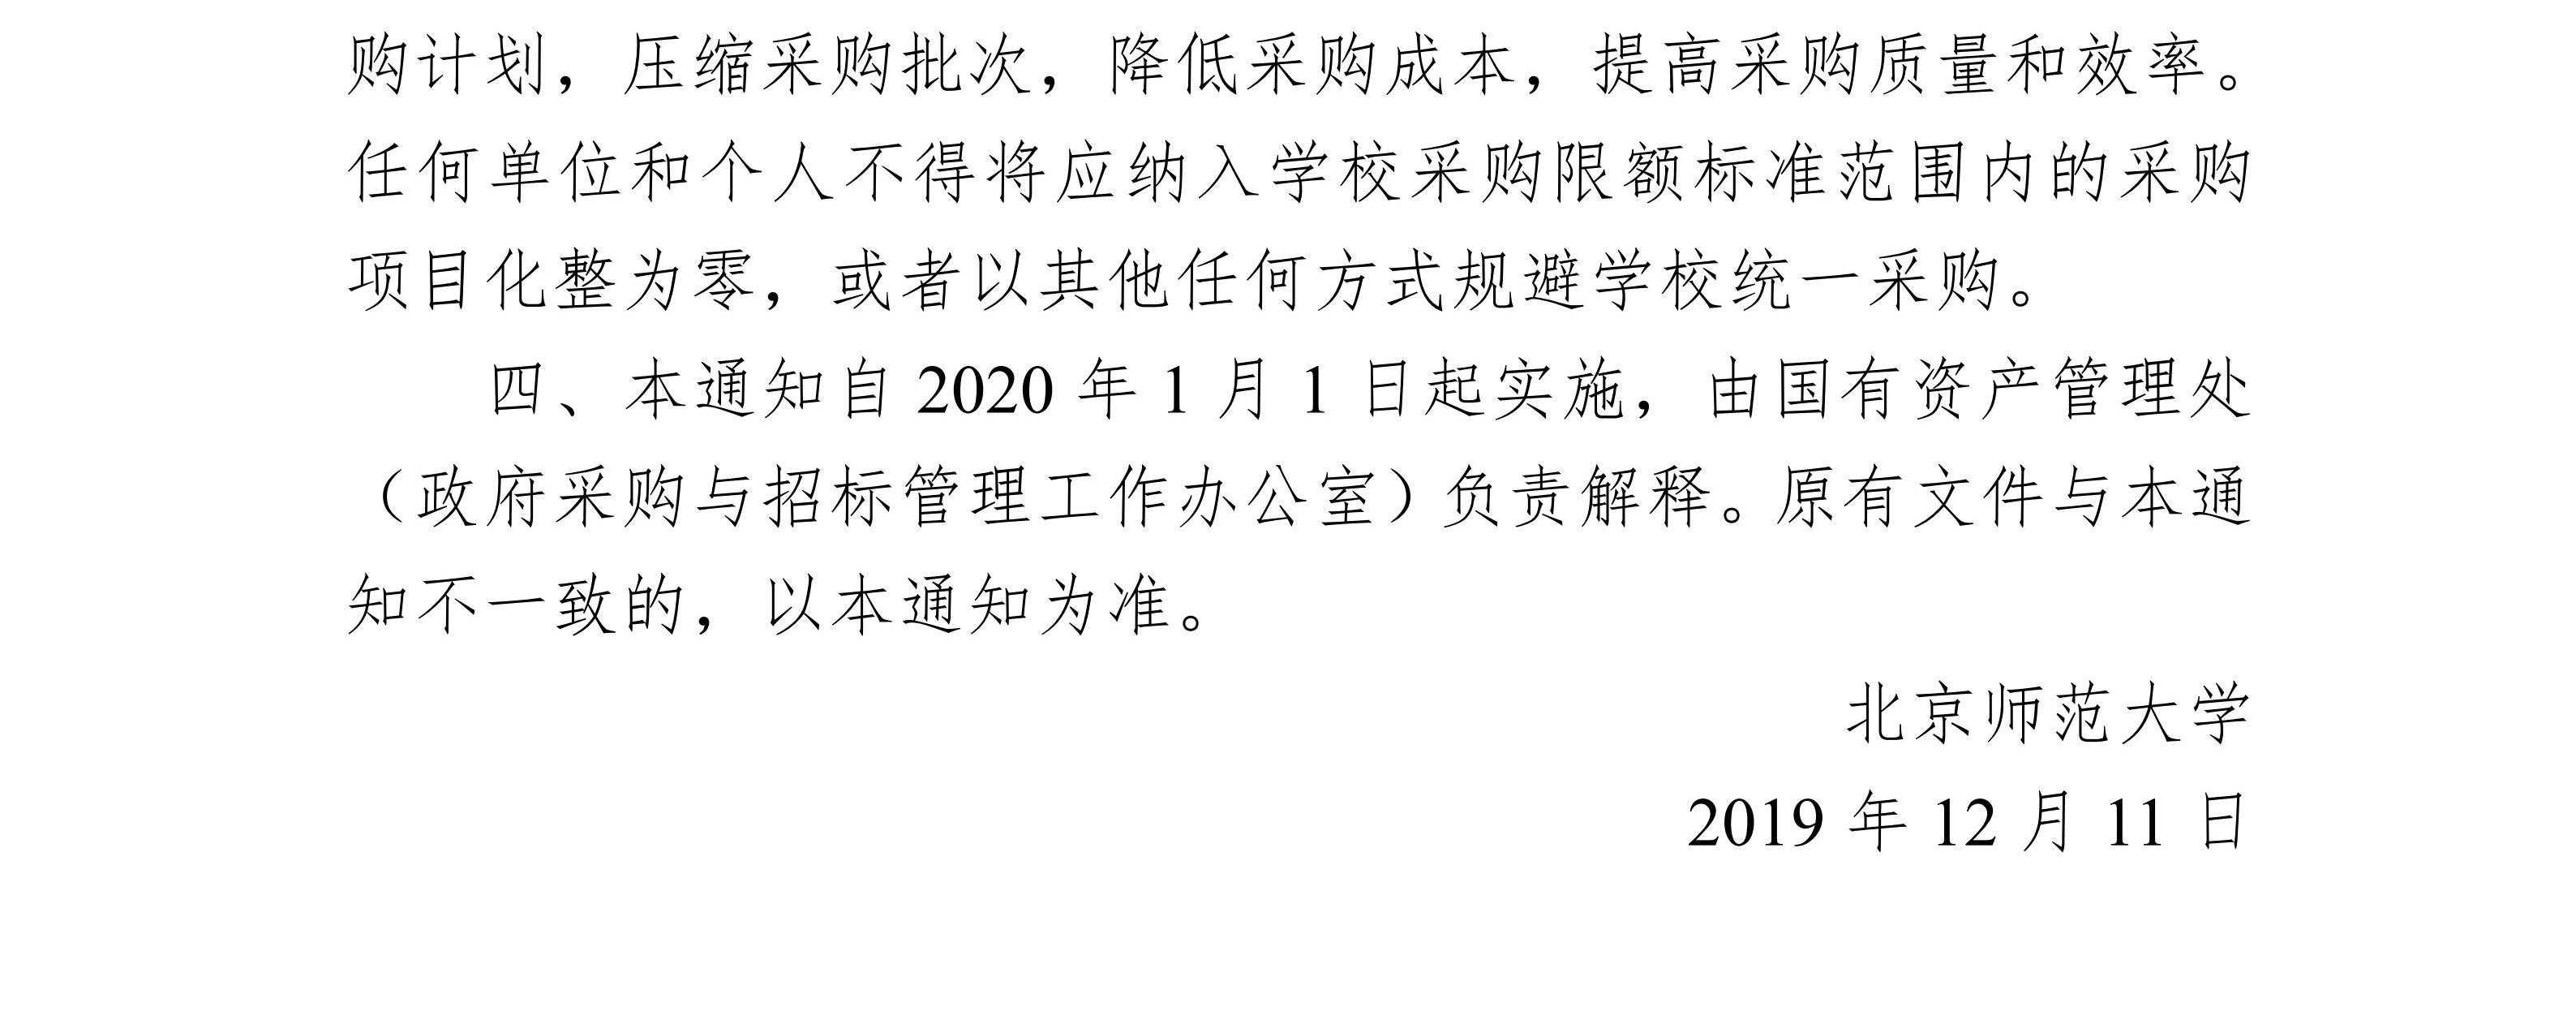 北京师范大学关于调整学校采购限额标准的通知_3.jpg